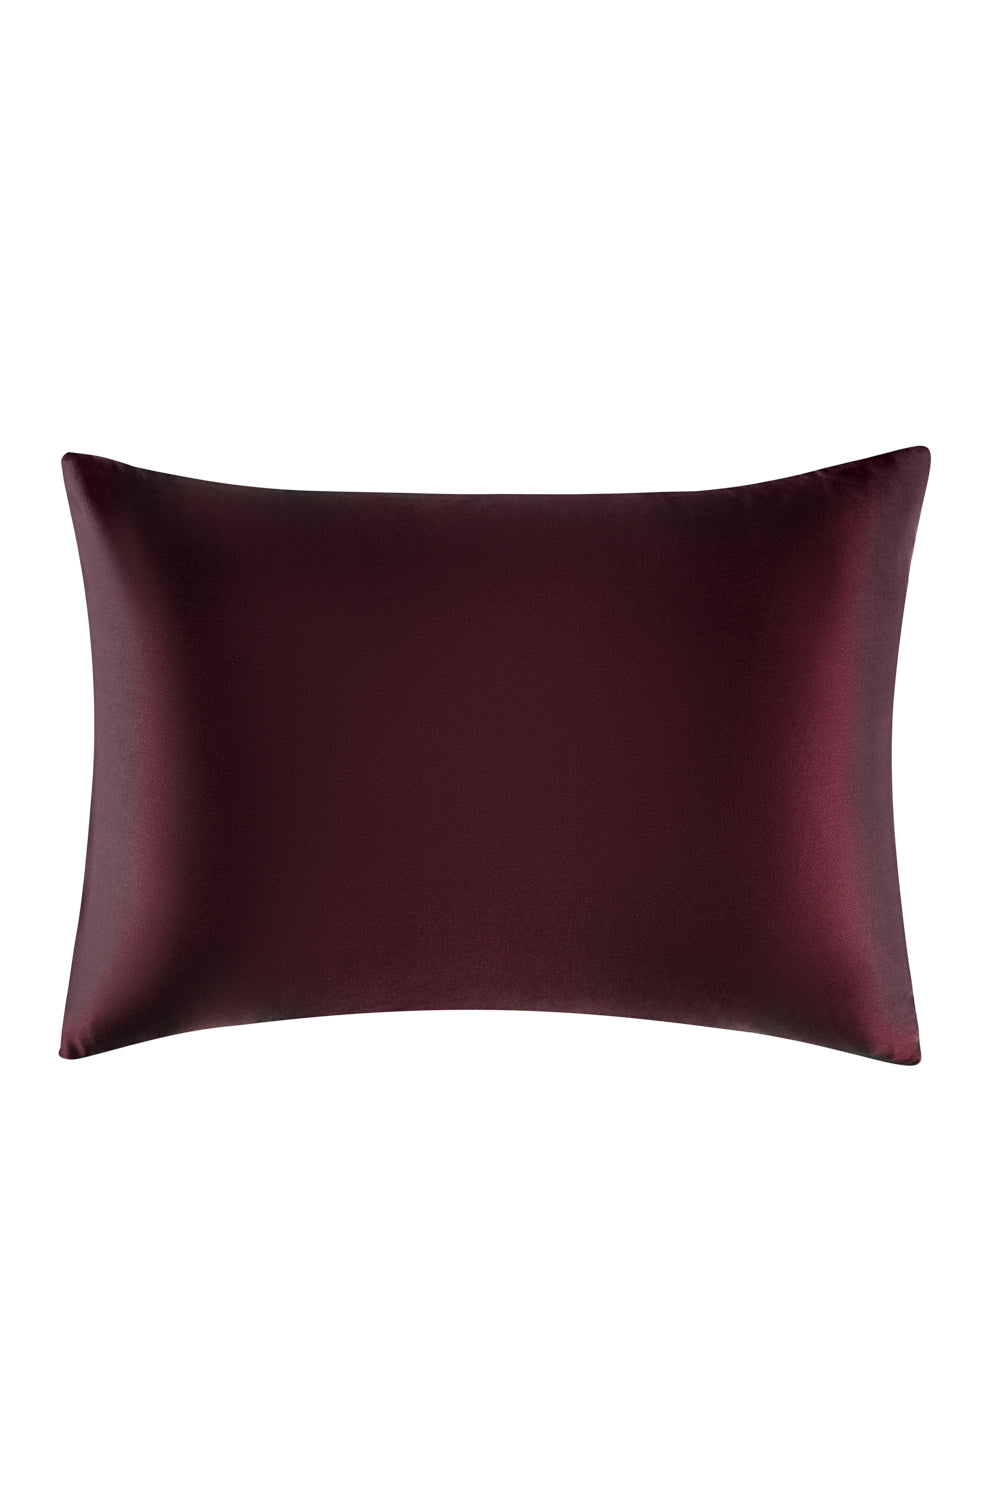 Silk Pillow Case in Bordeaux